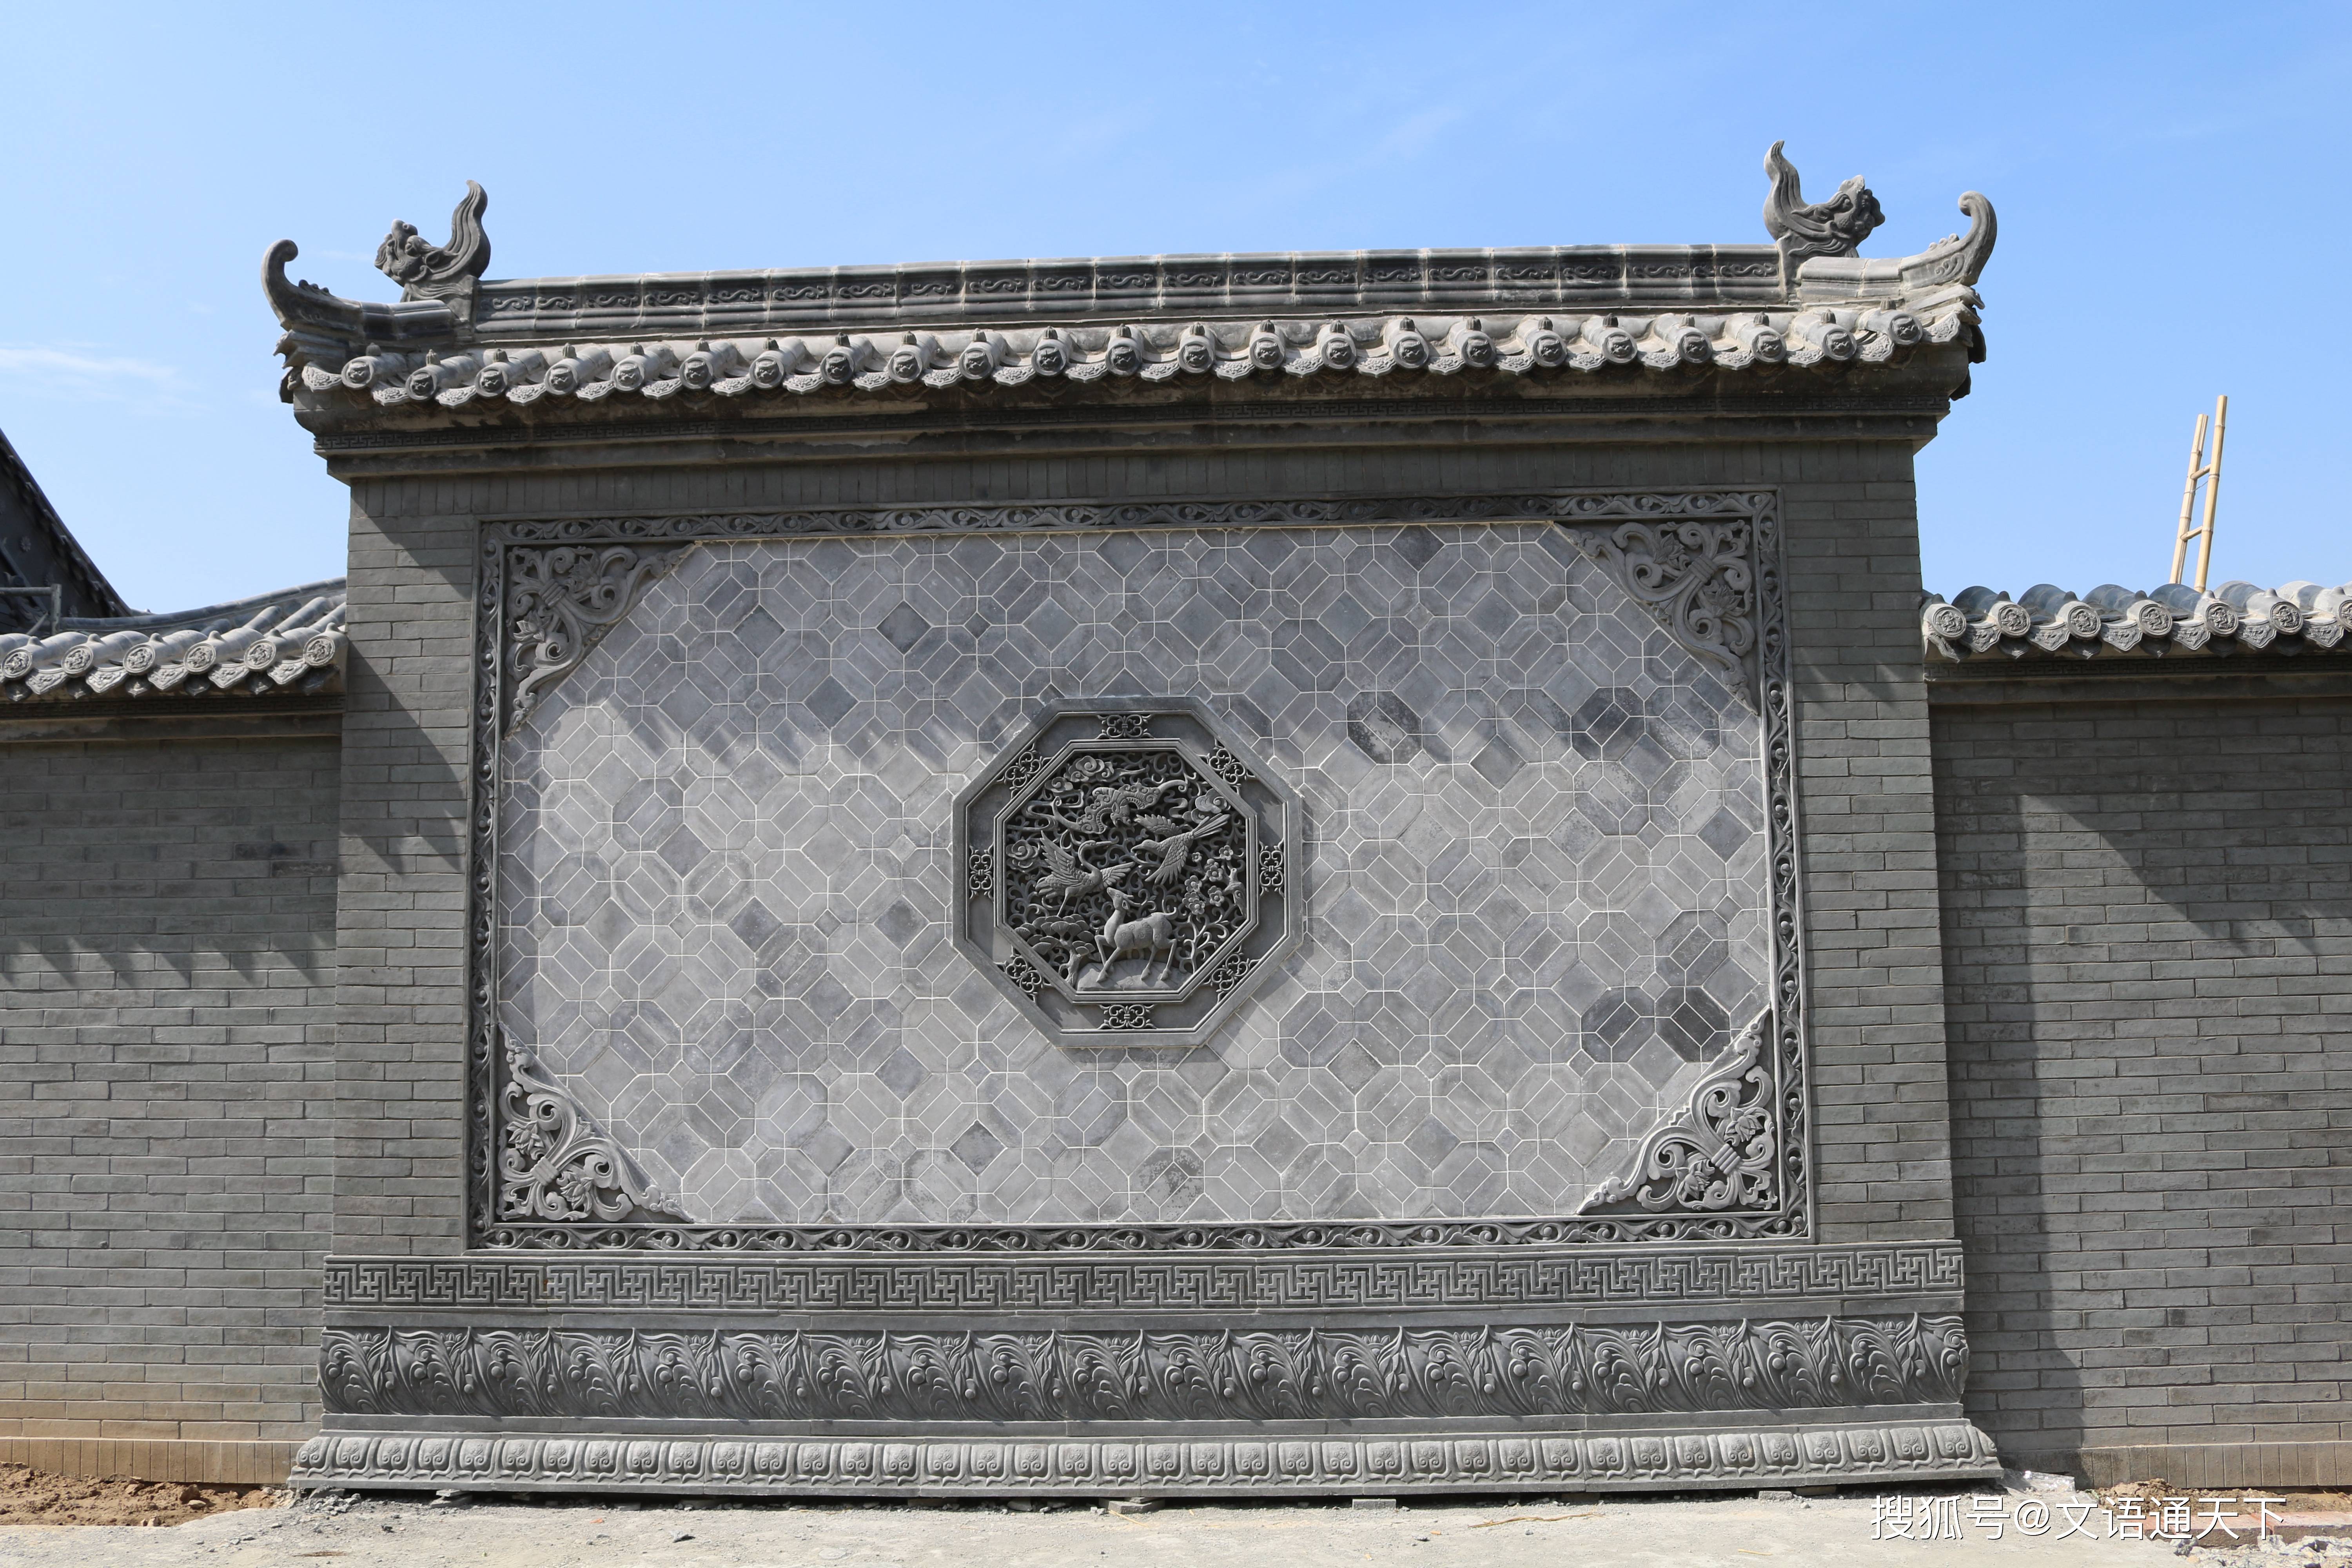 唐语文化砖仿石资材:青砖平面青砖条别墅四合院外墙装修,复古中国风